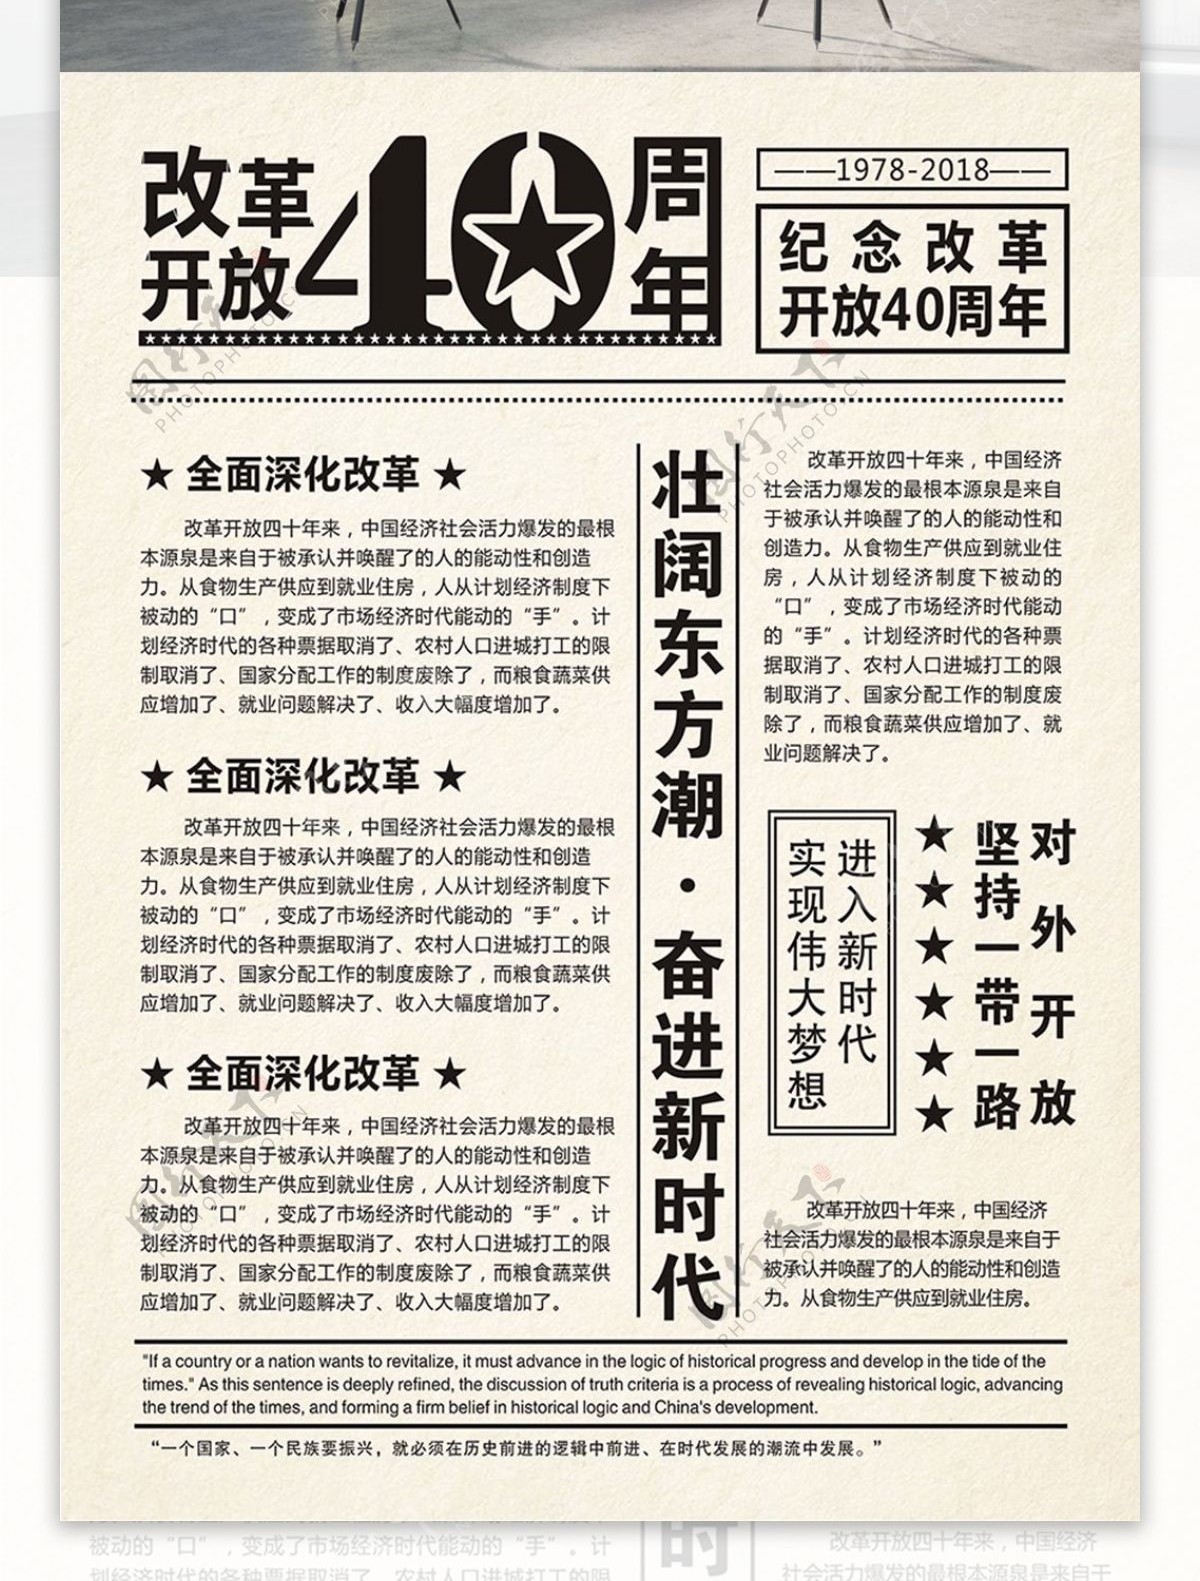 改革开放40周年复古报纸版式海报